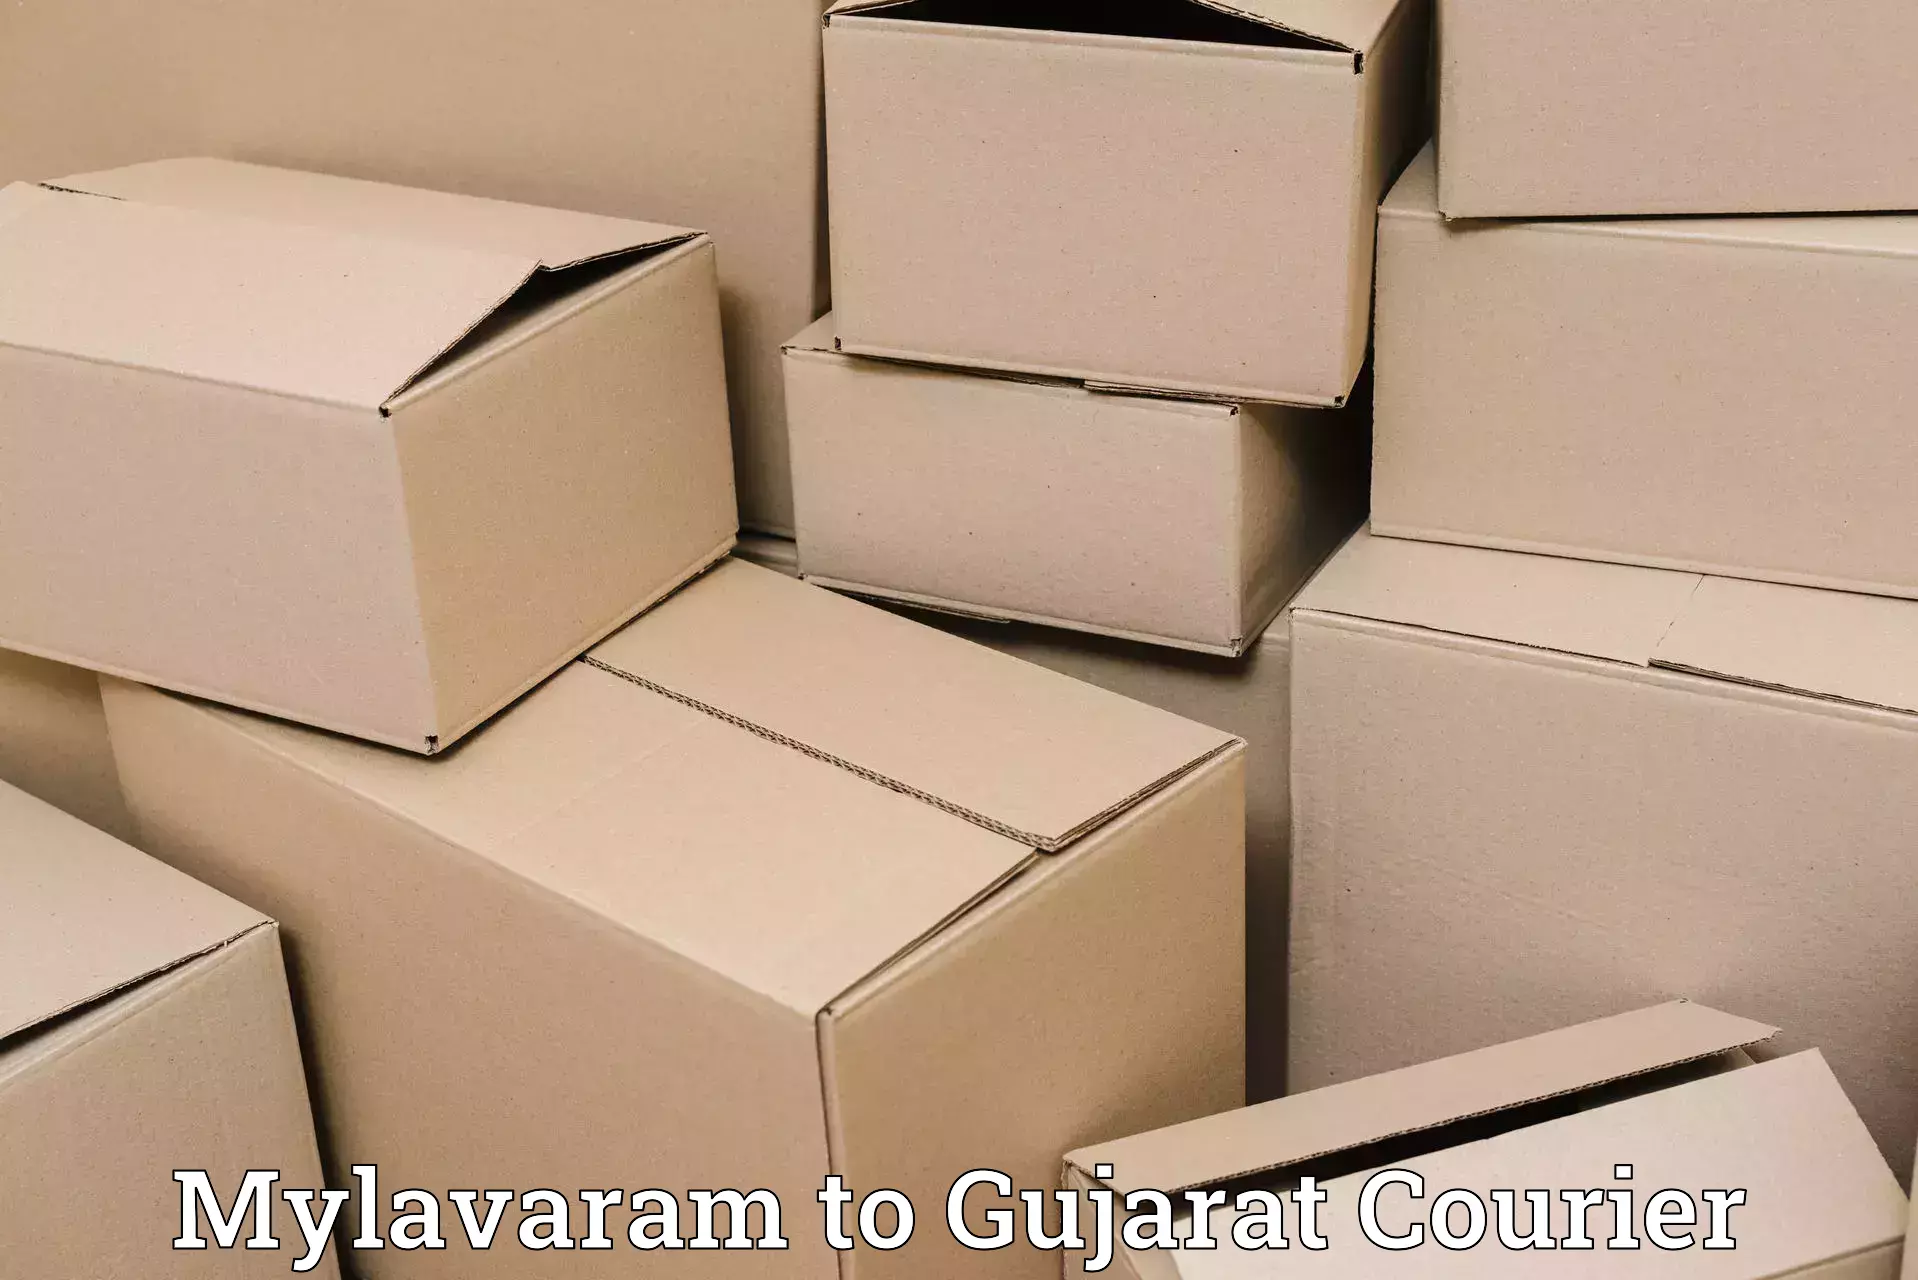 User-friendly courier app Mylavaram to Gujarat